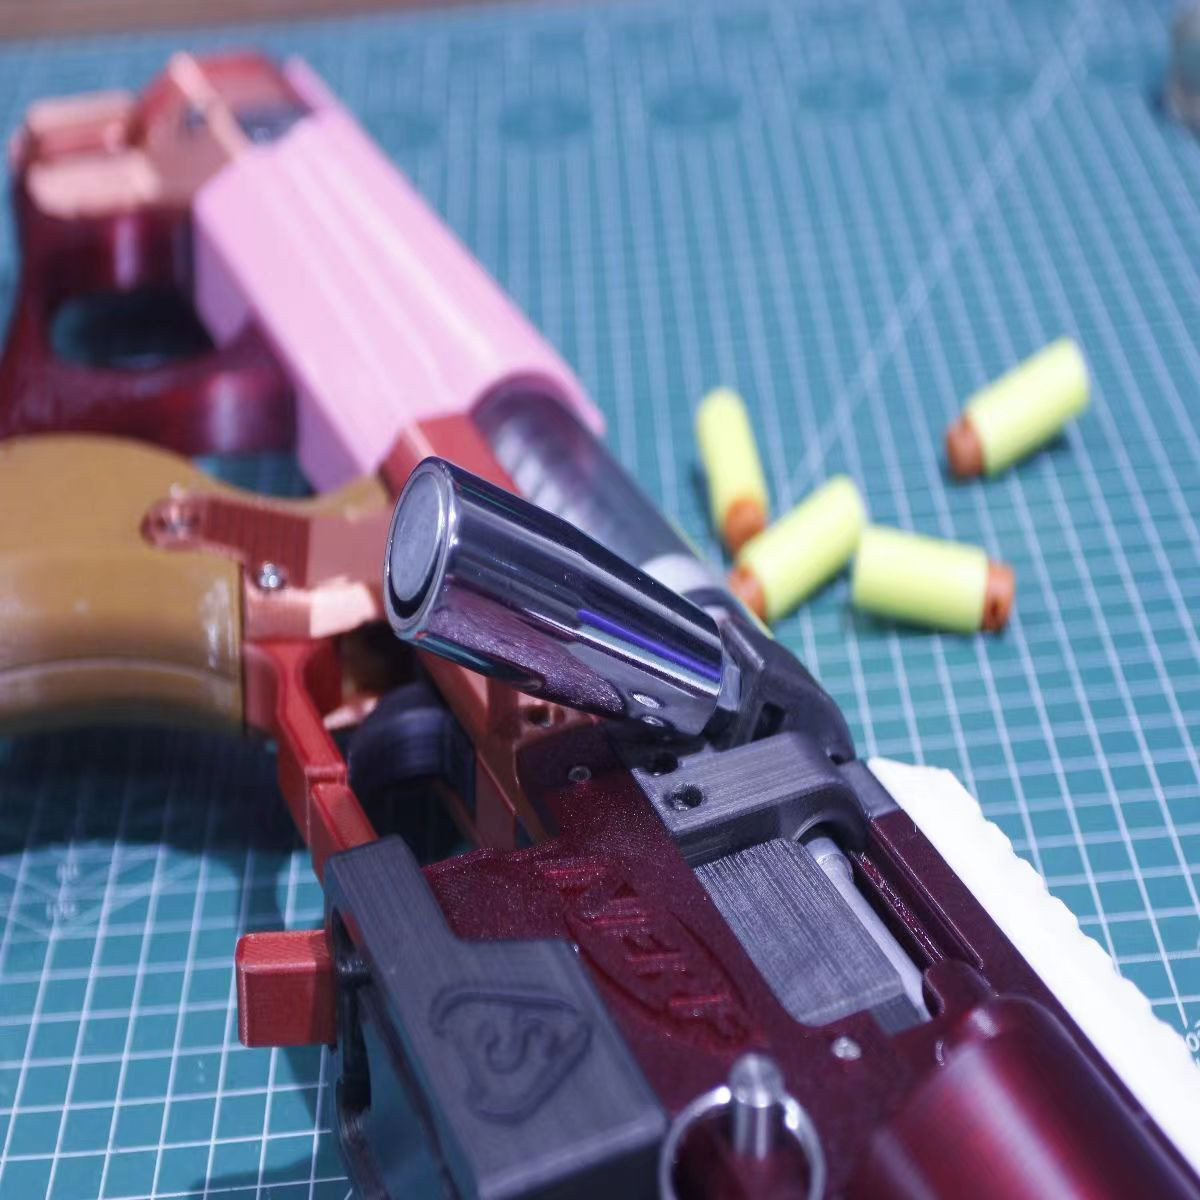 CynthiaGEN2 シンシア スポンジソフトボールランチャー 3Dプリント玩具 ライフル サブマシンガン 爆発銃 サバイバル・ゲーム